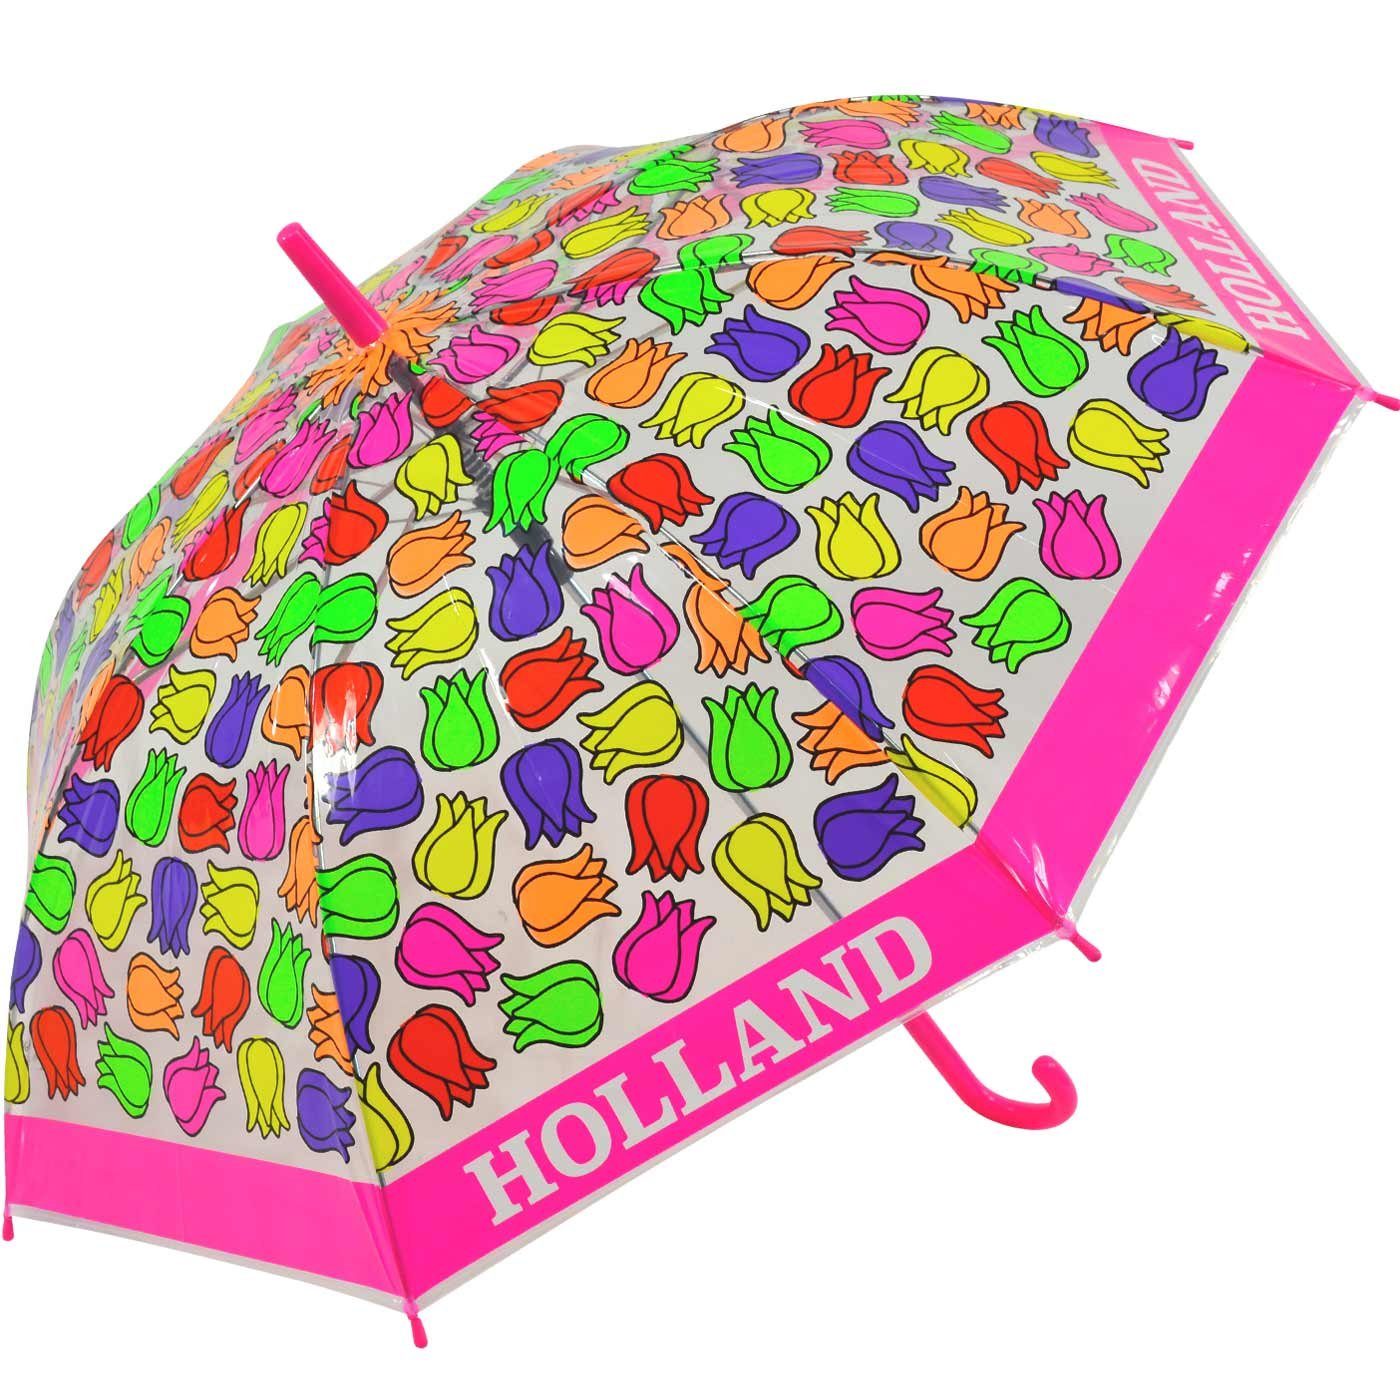 Impliva Langregenschirm Falconetti Kinderschirm transparent Tulpen, - bunt durchsichtig pink